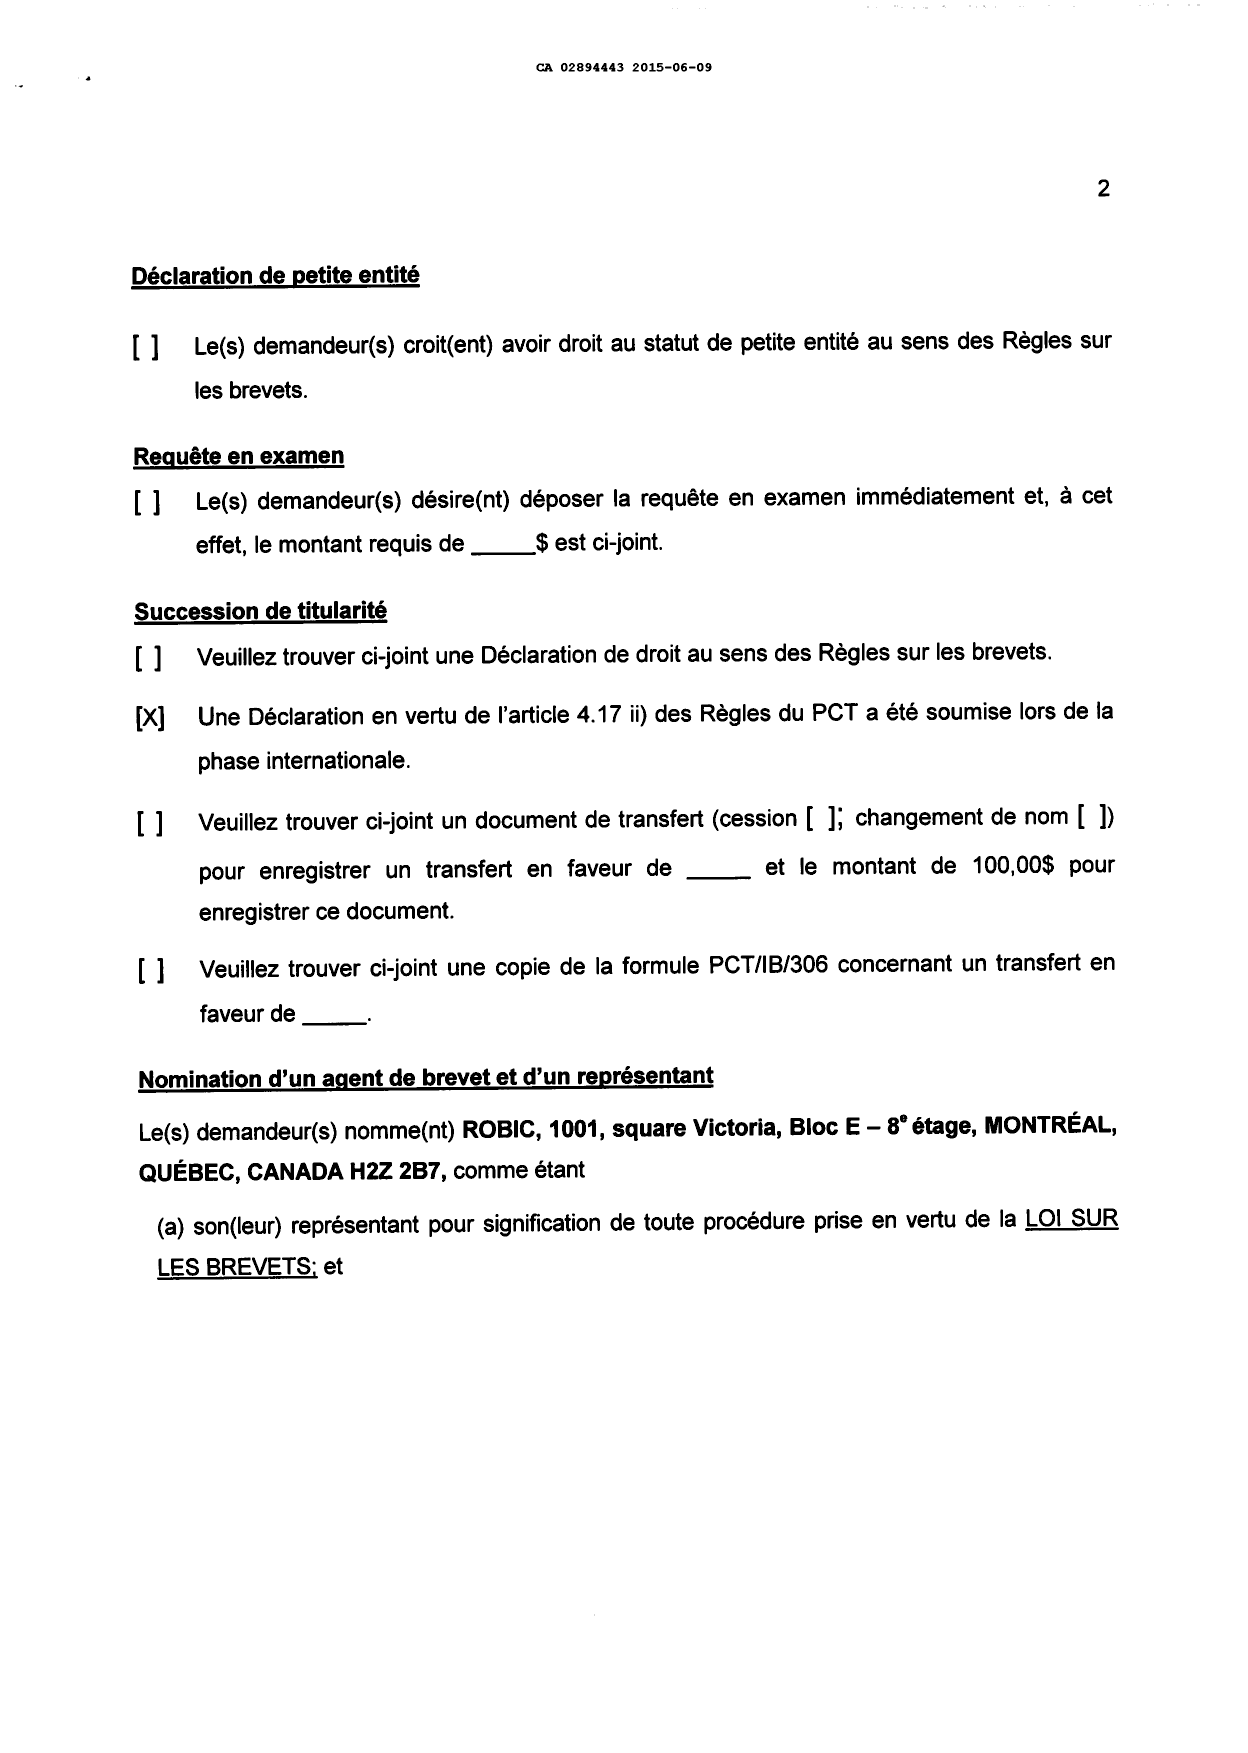 Document de brevet canadien 2894443. Demande d'entrée en phase nationale 20141209. Image 2 de 5